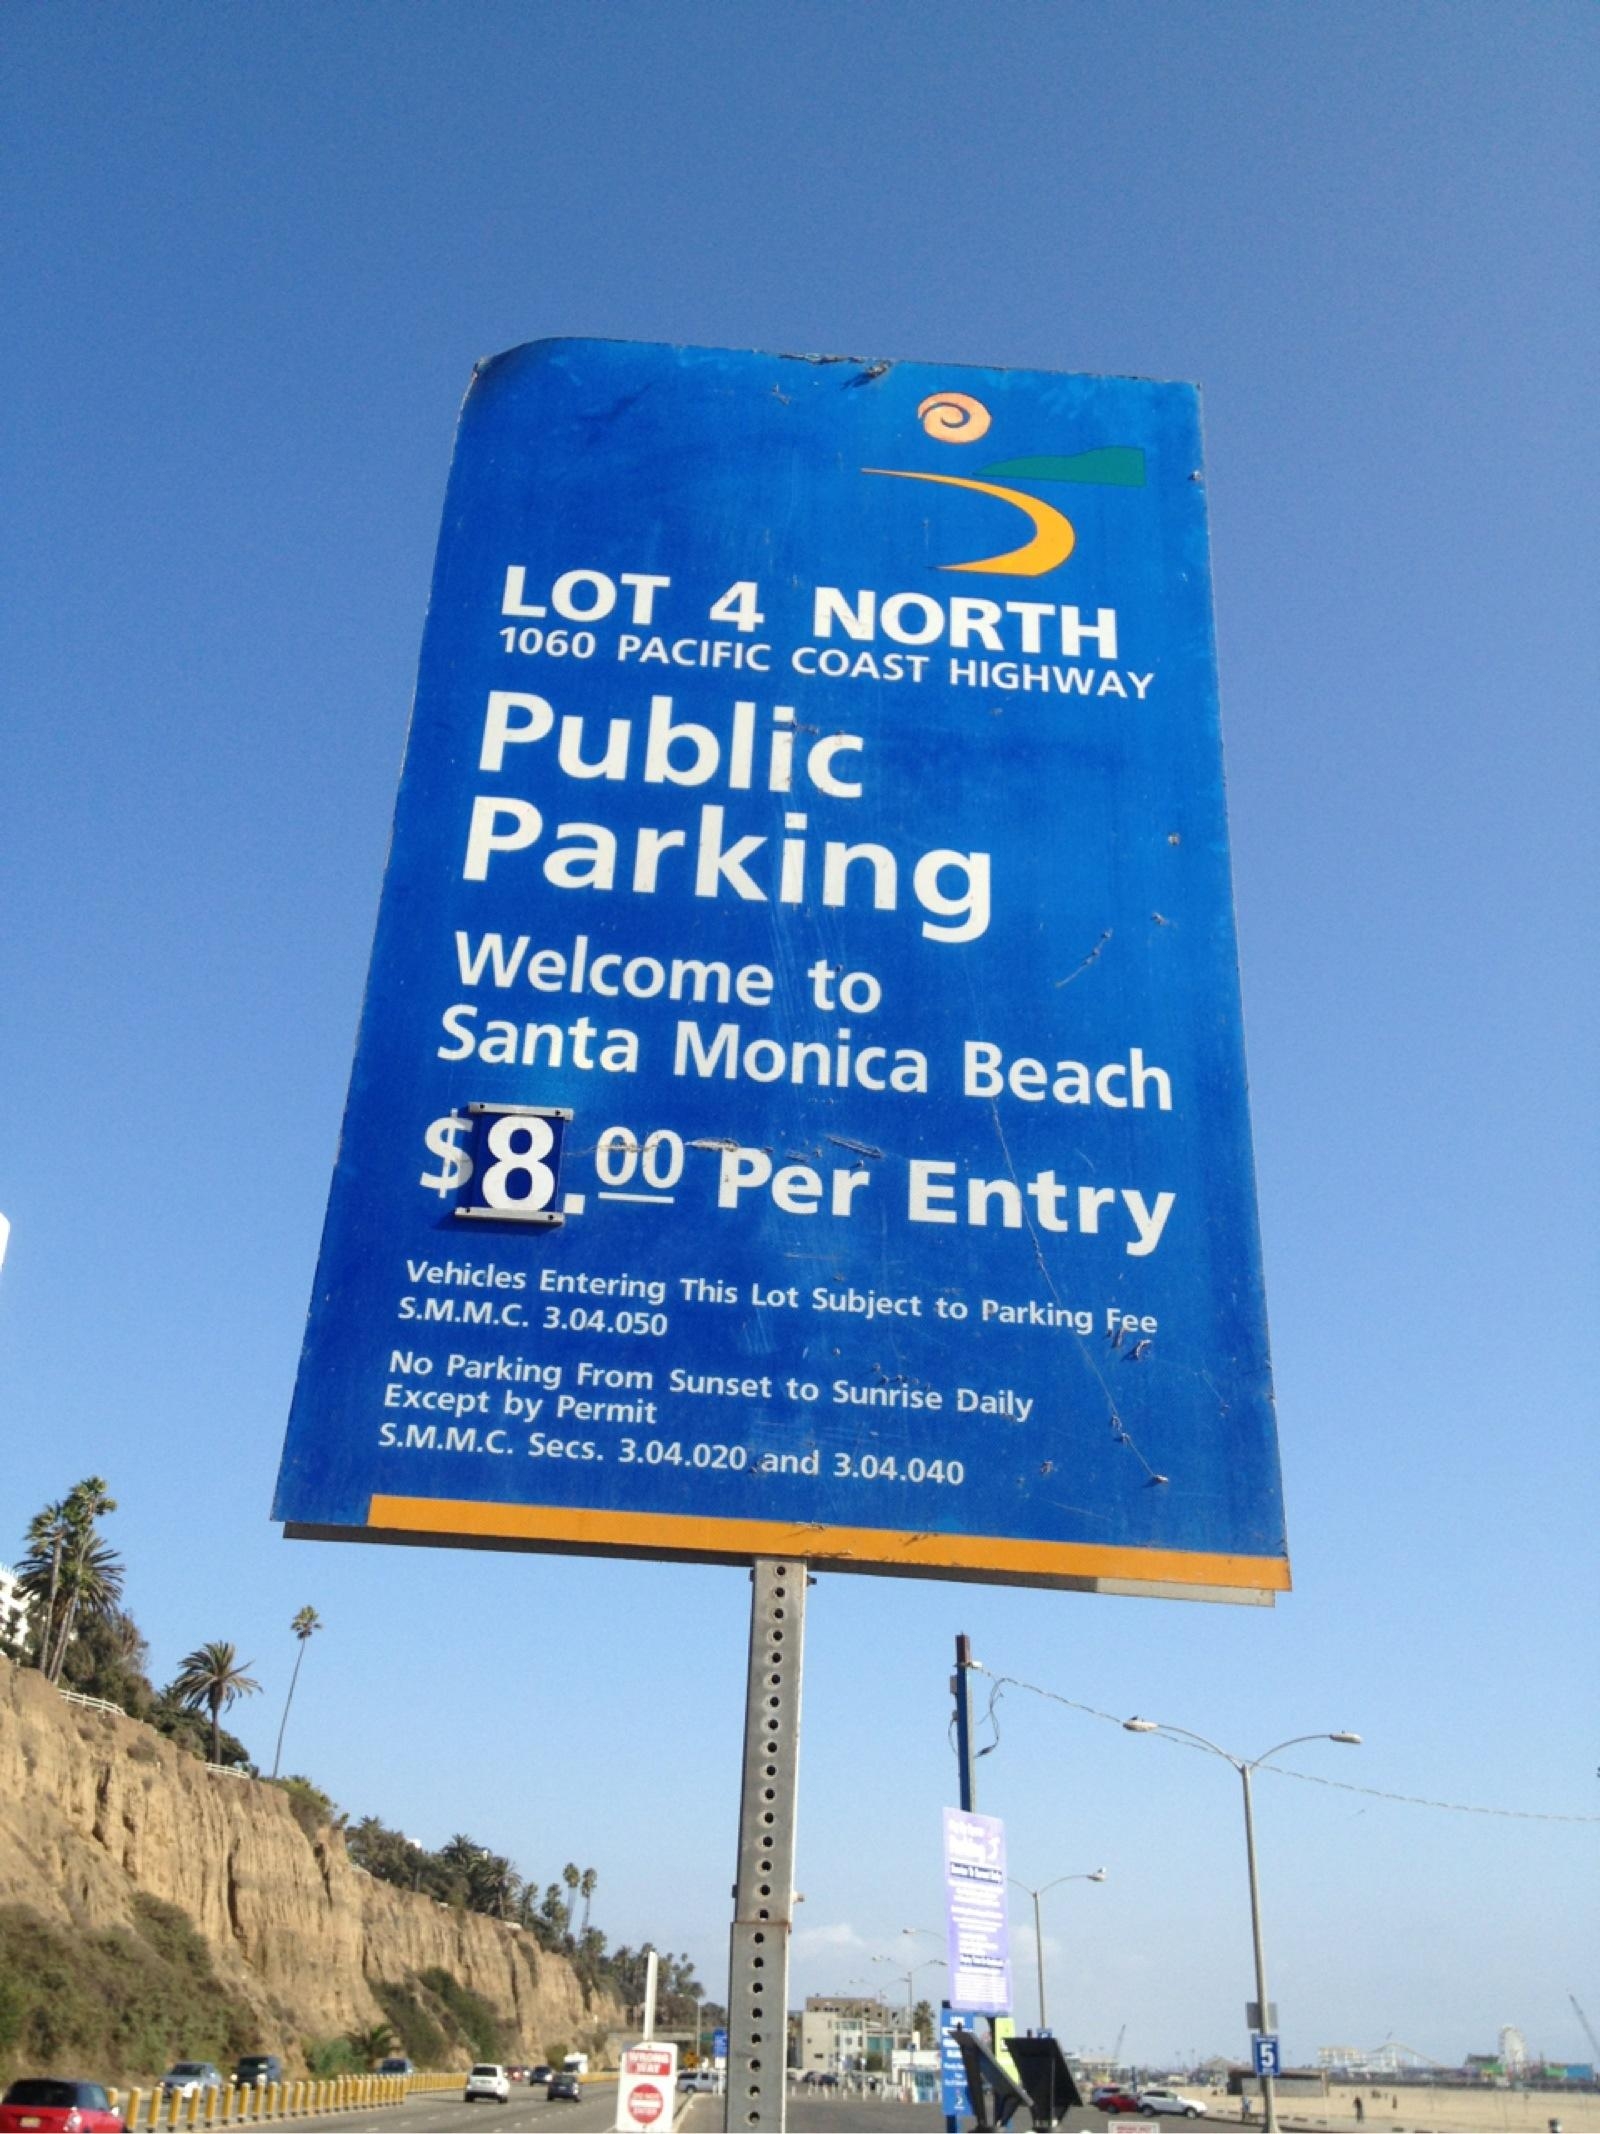 Lot 4 North Parking in Santa Monica ParkMe